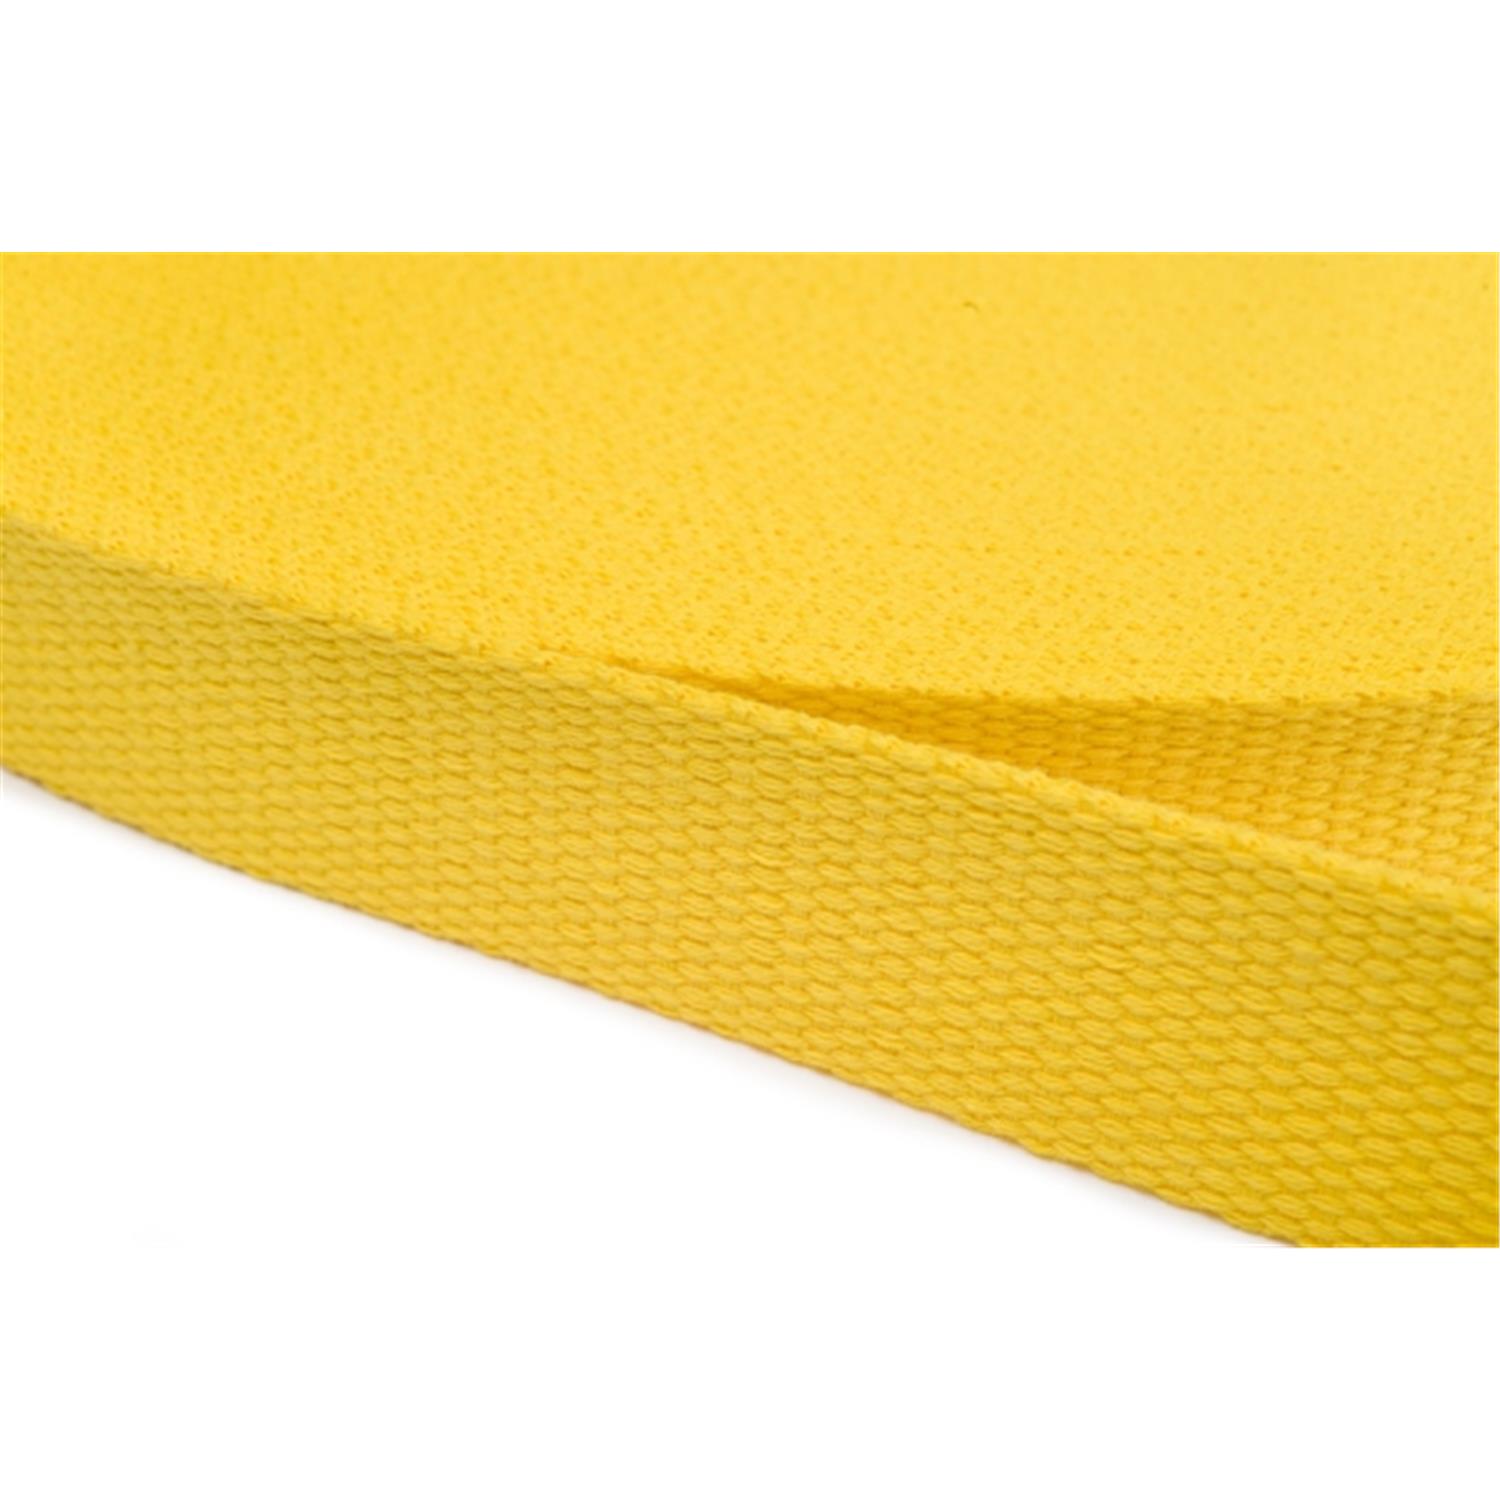 Gurtband aus Baumwolle 10mm in 20 Farben 05 - gelb 12 Meter